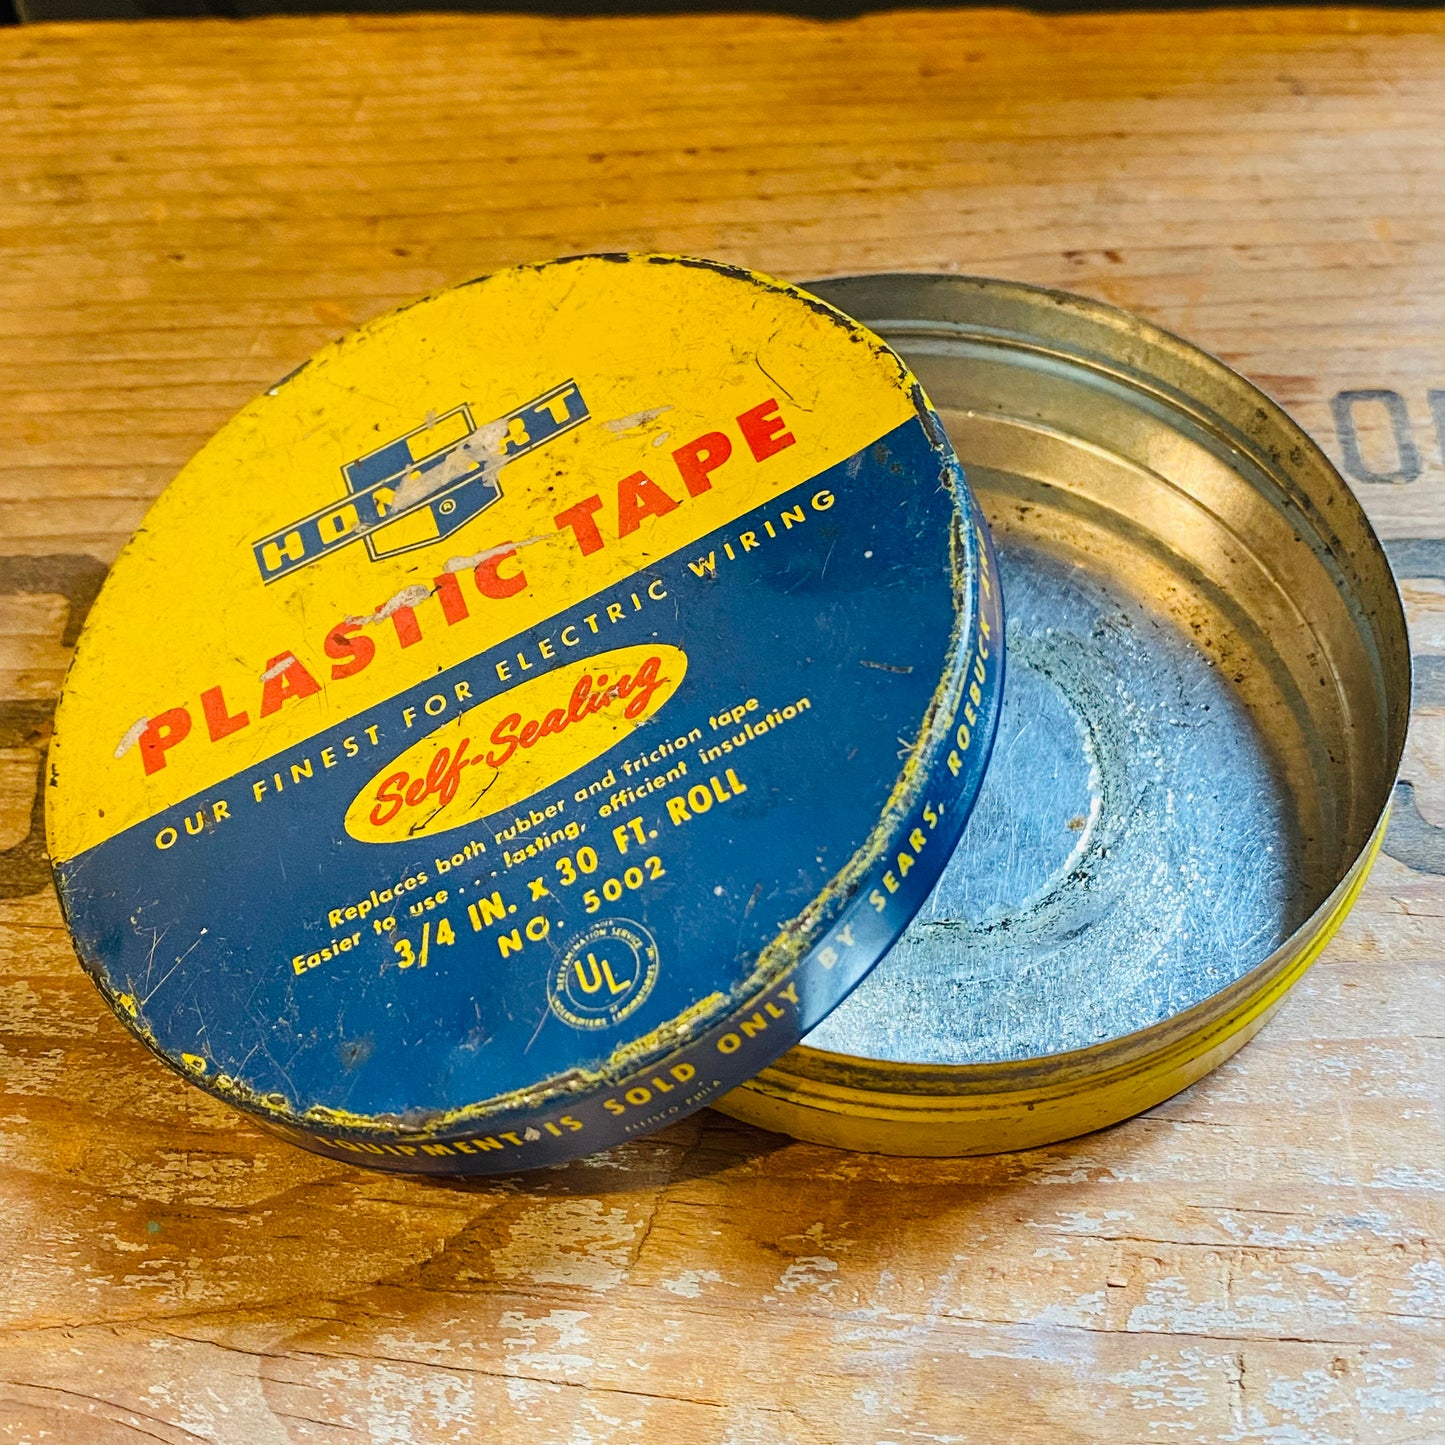 【1950s vintage】TIN缶 HOMART PLASTIC TAPE